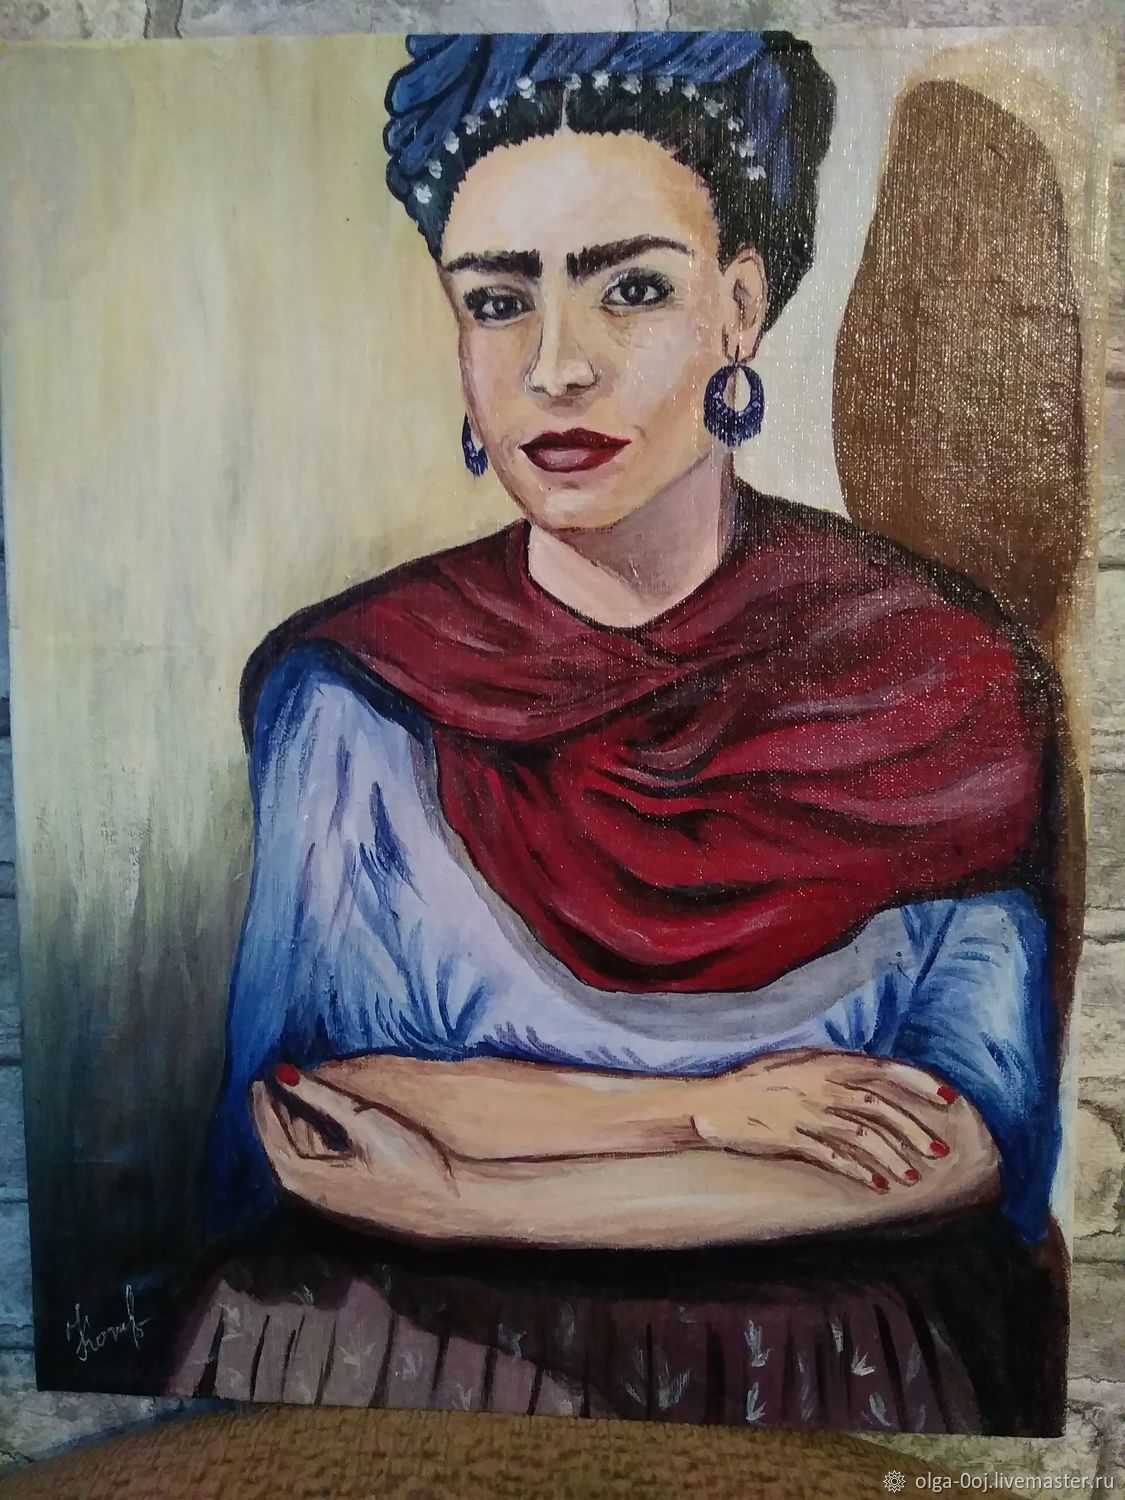 Frida samara